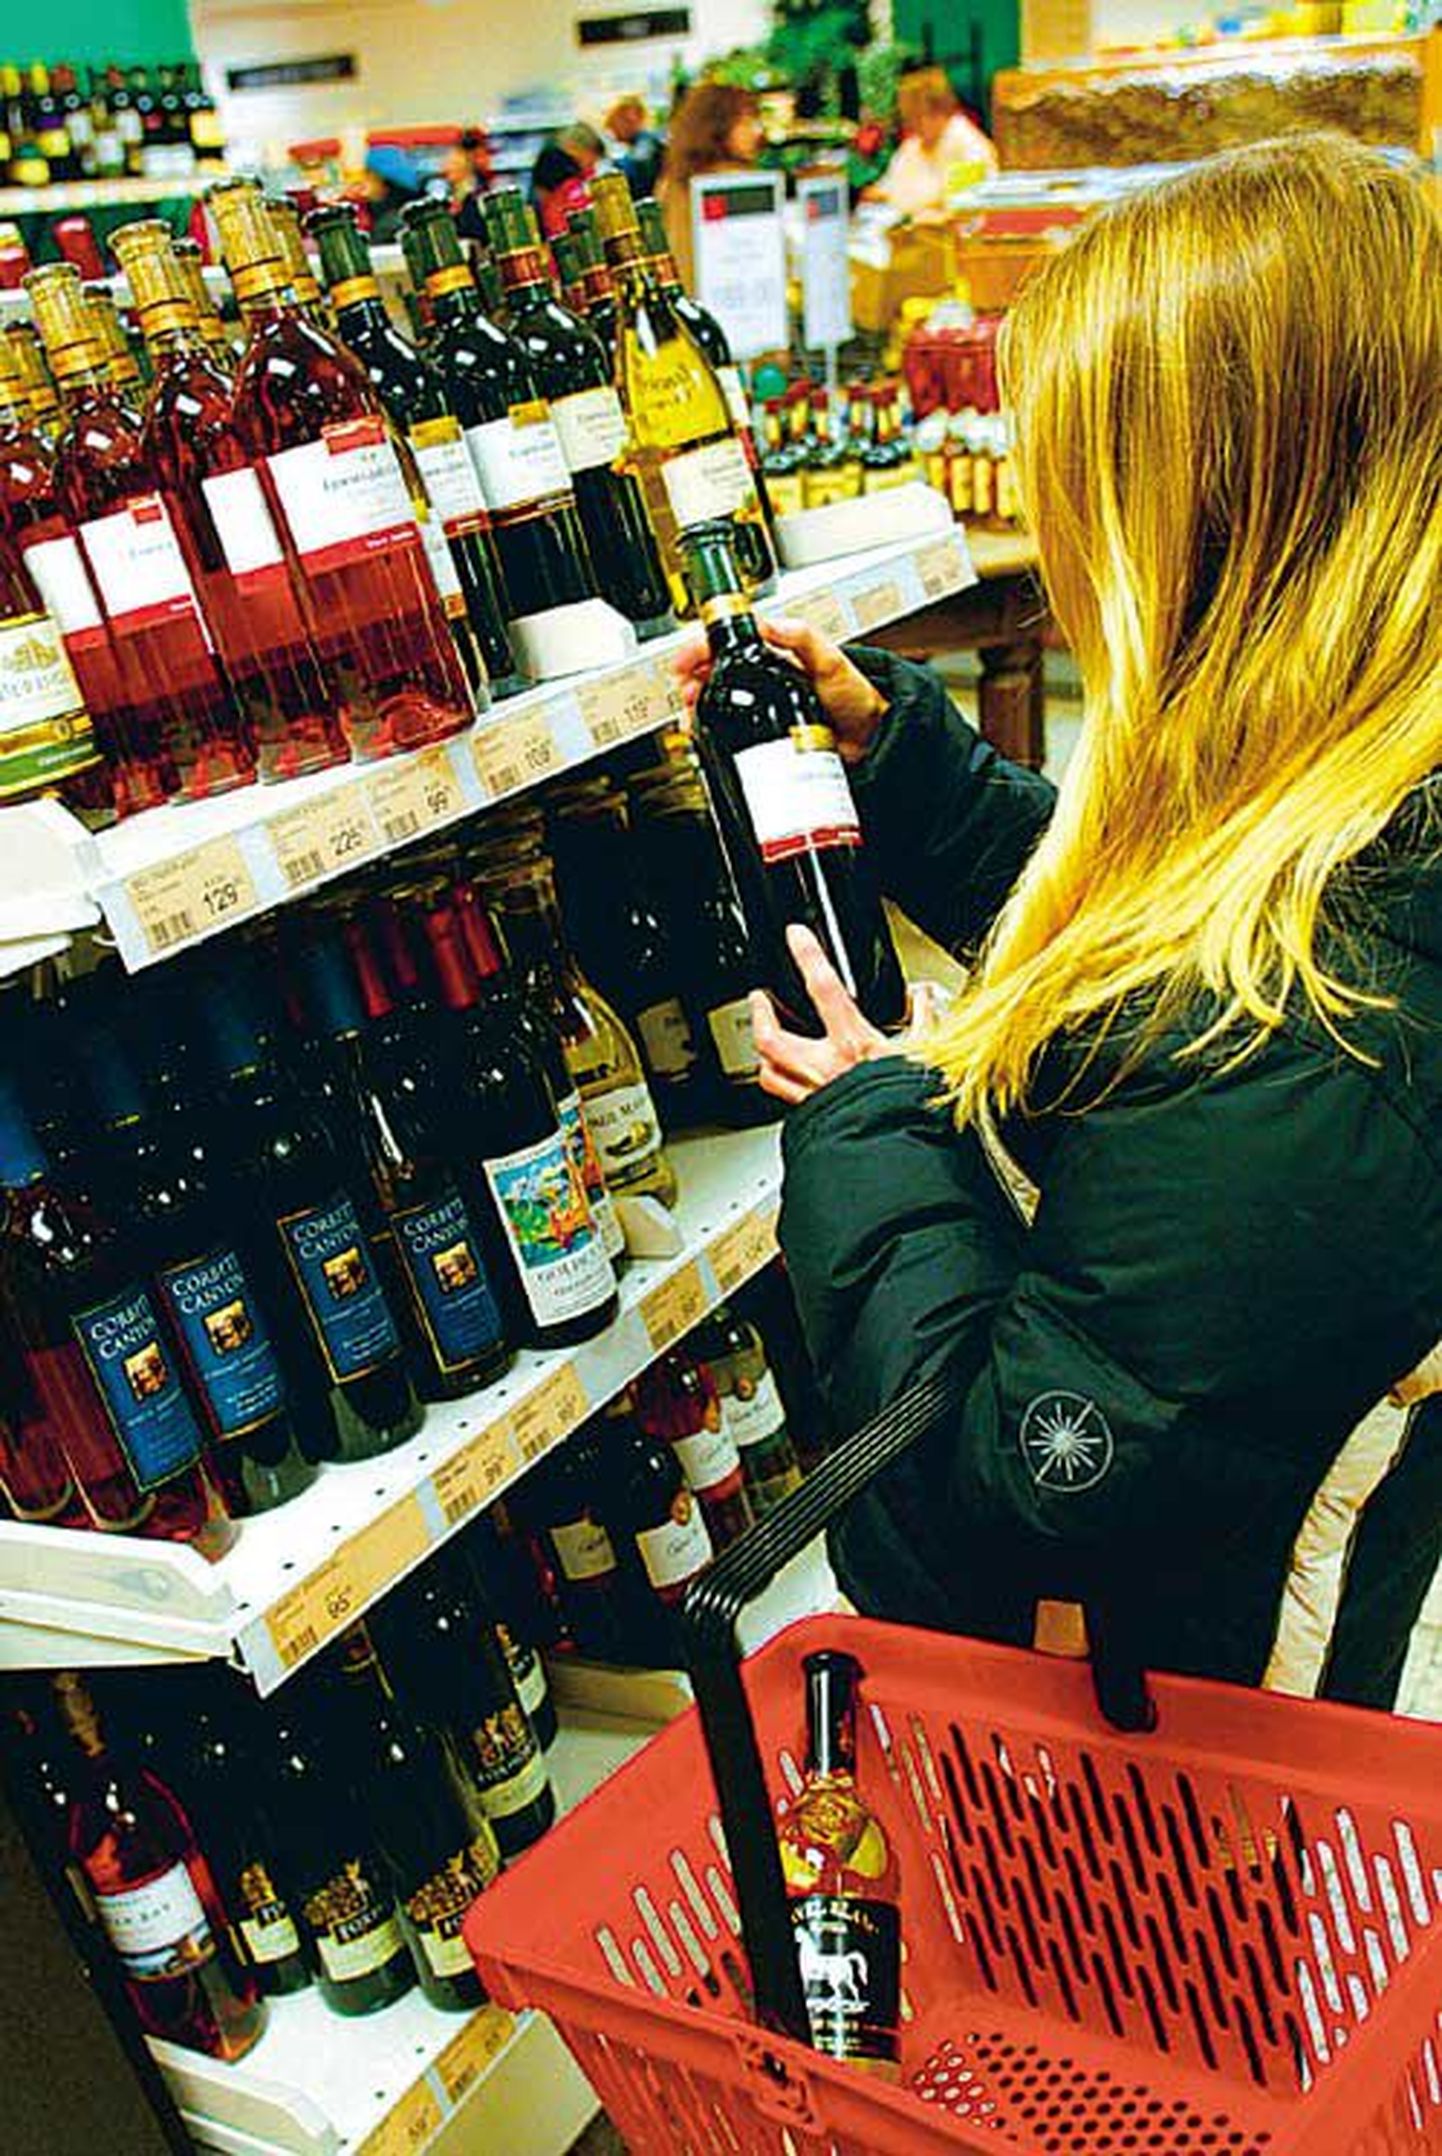 Veinijoojad tulevast aastast suurt aktsiisiga seotud hinnatõusu kartma ei pea, kui nad just rahvasuus «peedina» tuntud piiritusega kangestatud veine ei tarbi.